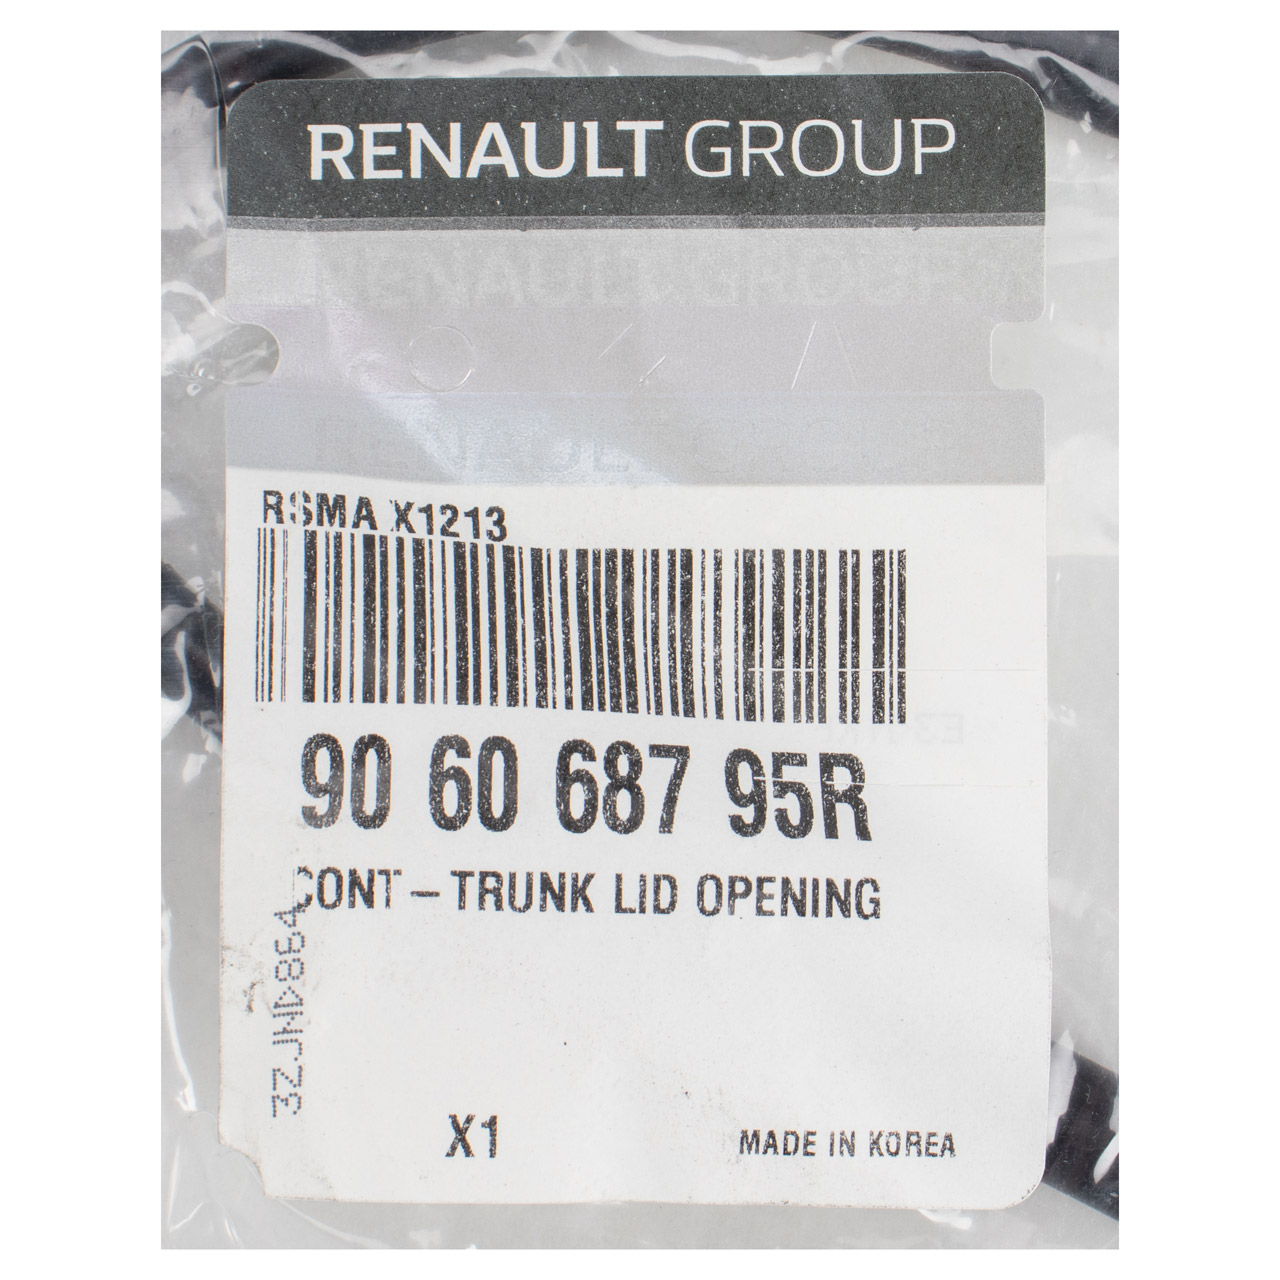 ORIGINAL Renault Schalter Kofferraumöffner Heckklappenöffner Koleos 906068795R